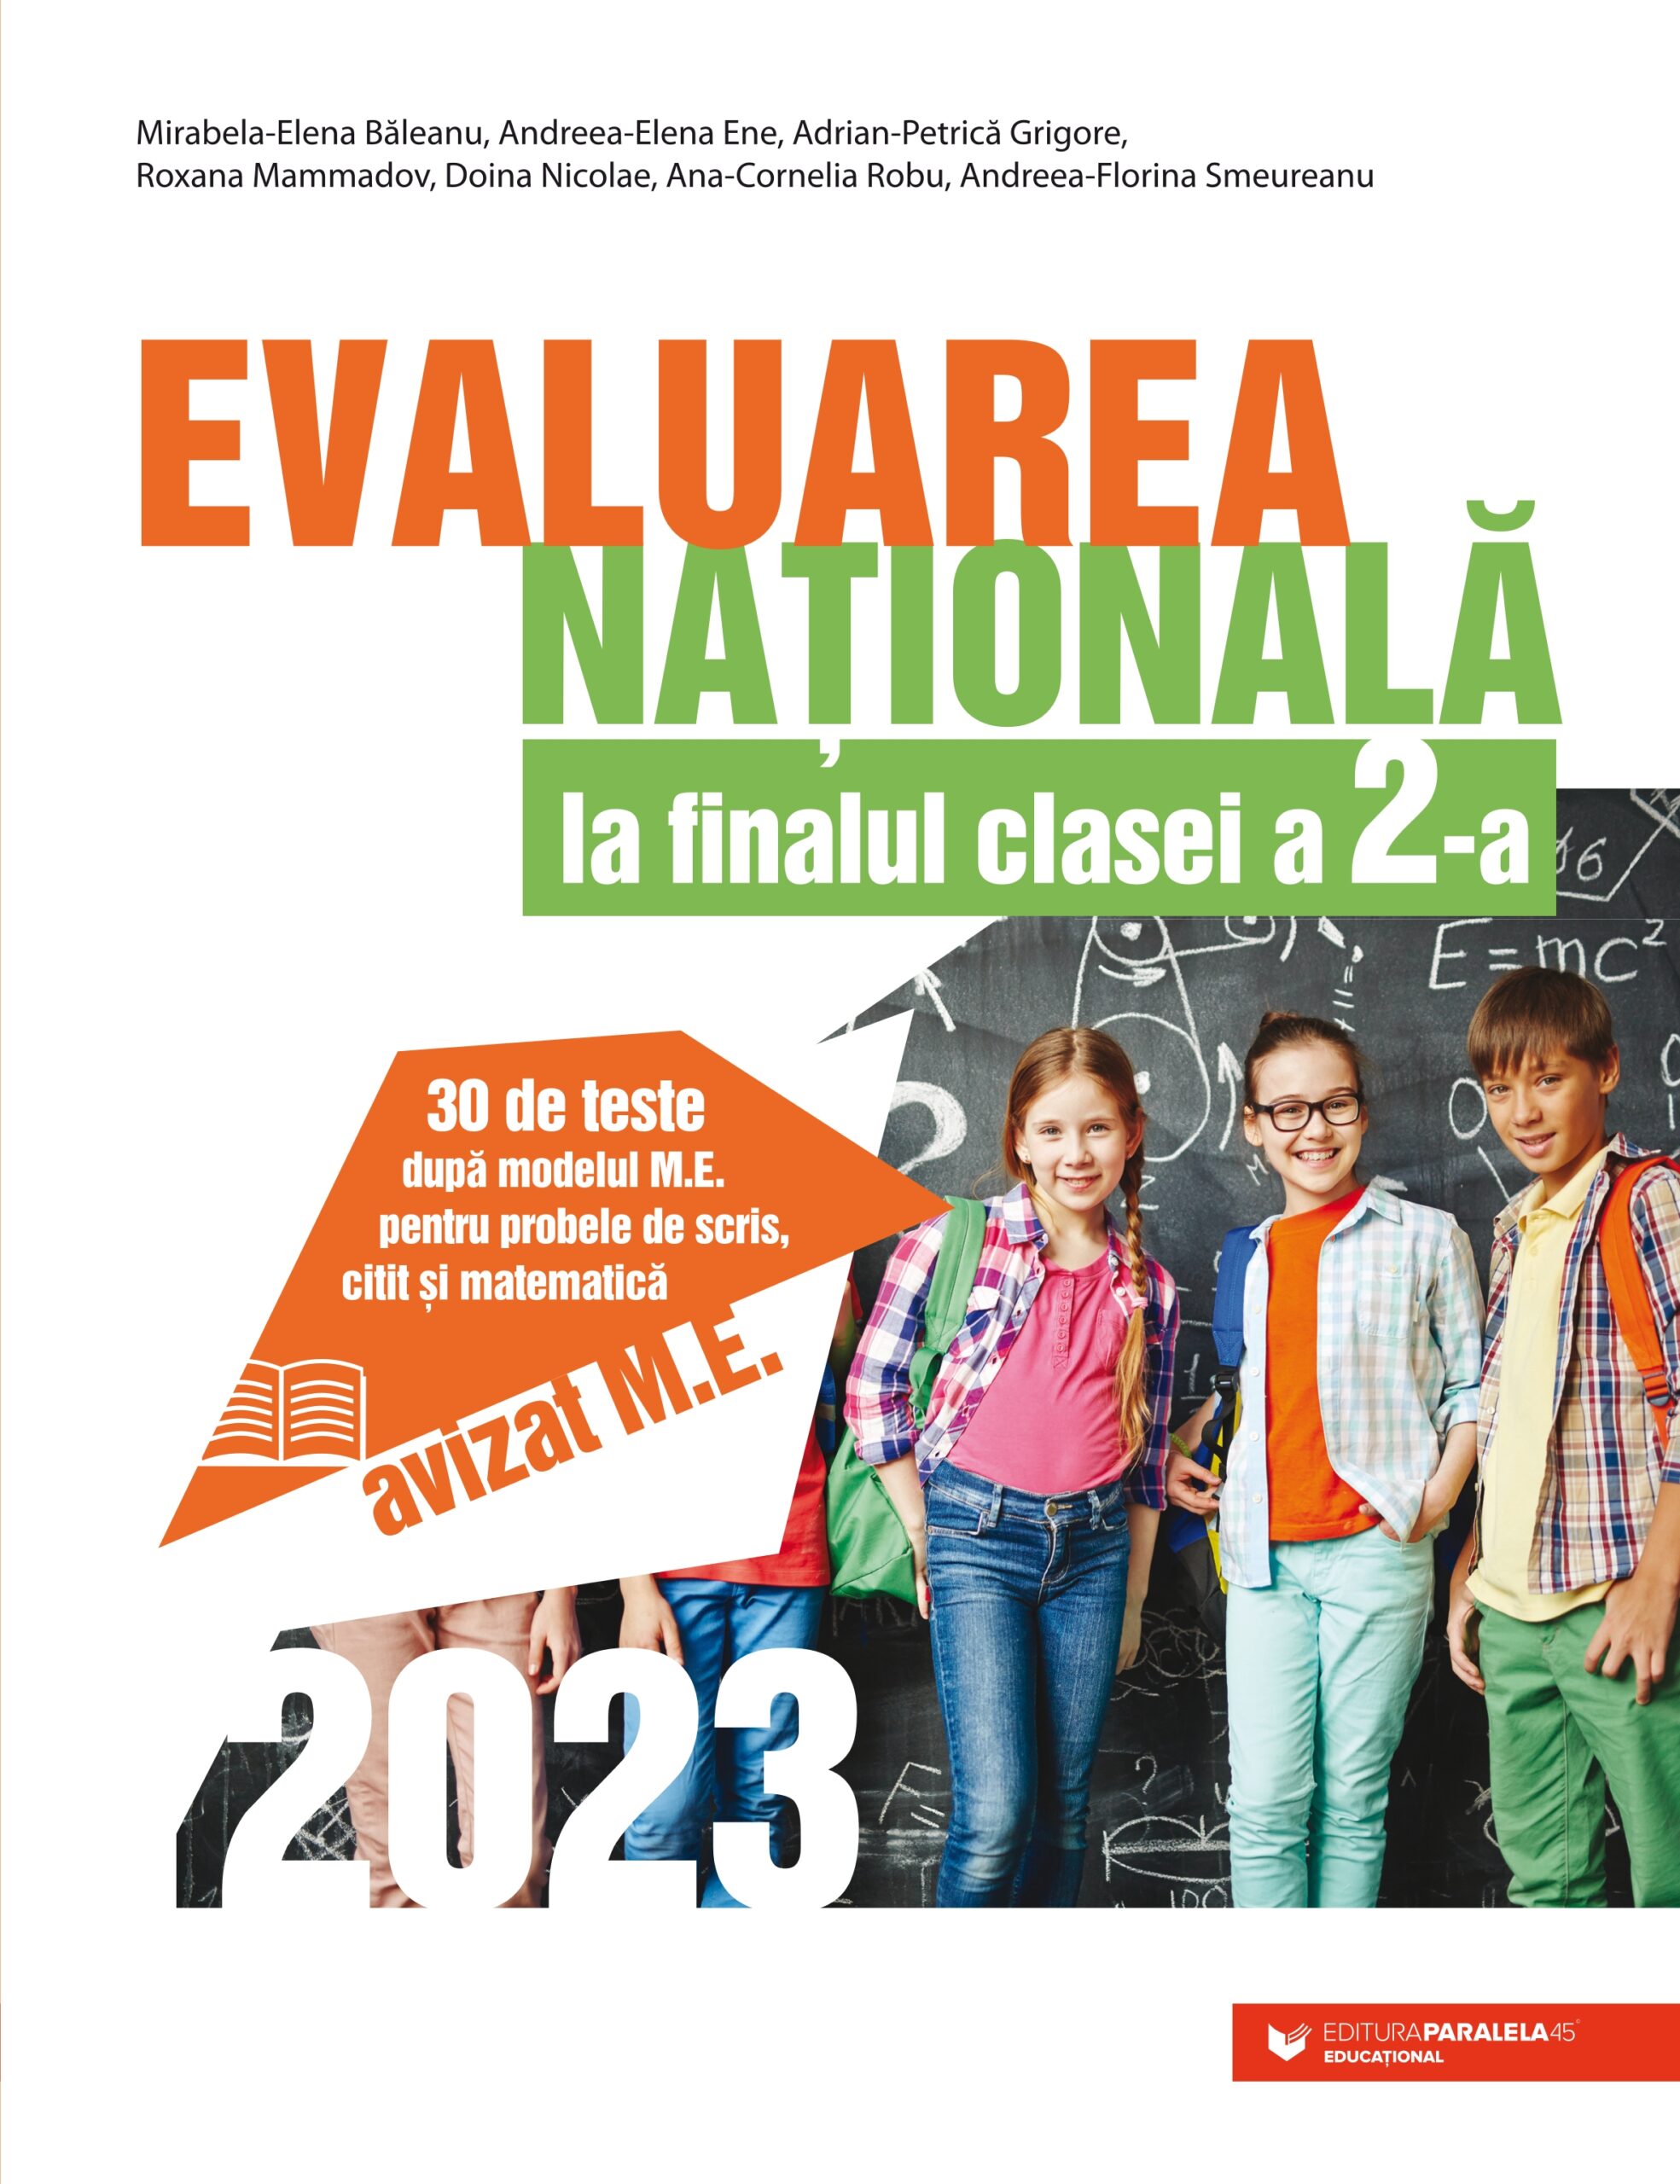 Evaluarea Națională 2023 la finalul clasei a II-a. 30 de teste după modelul M.E. pentru probele de scris, citit și matematică